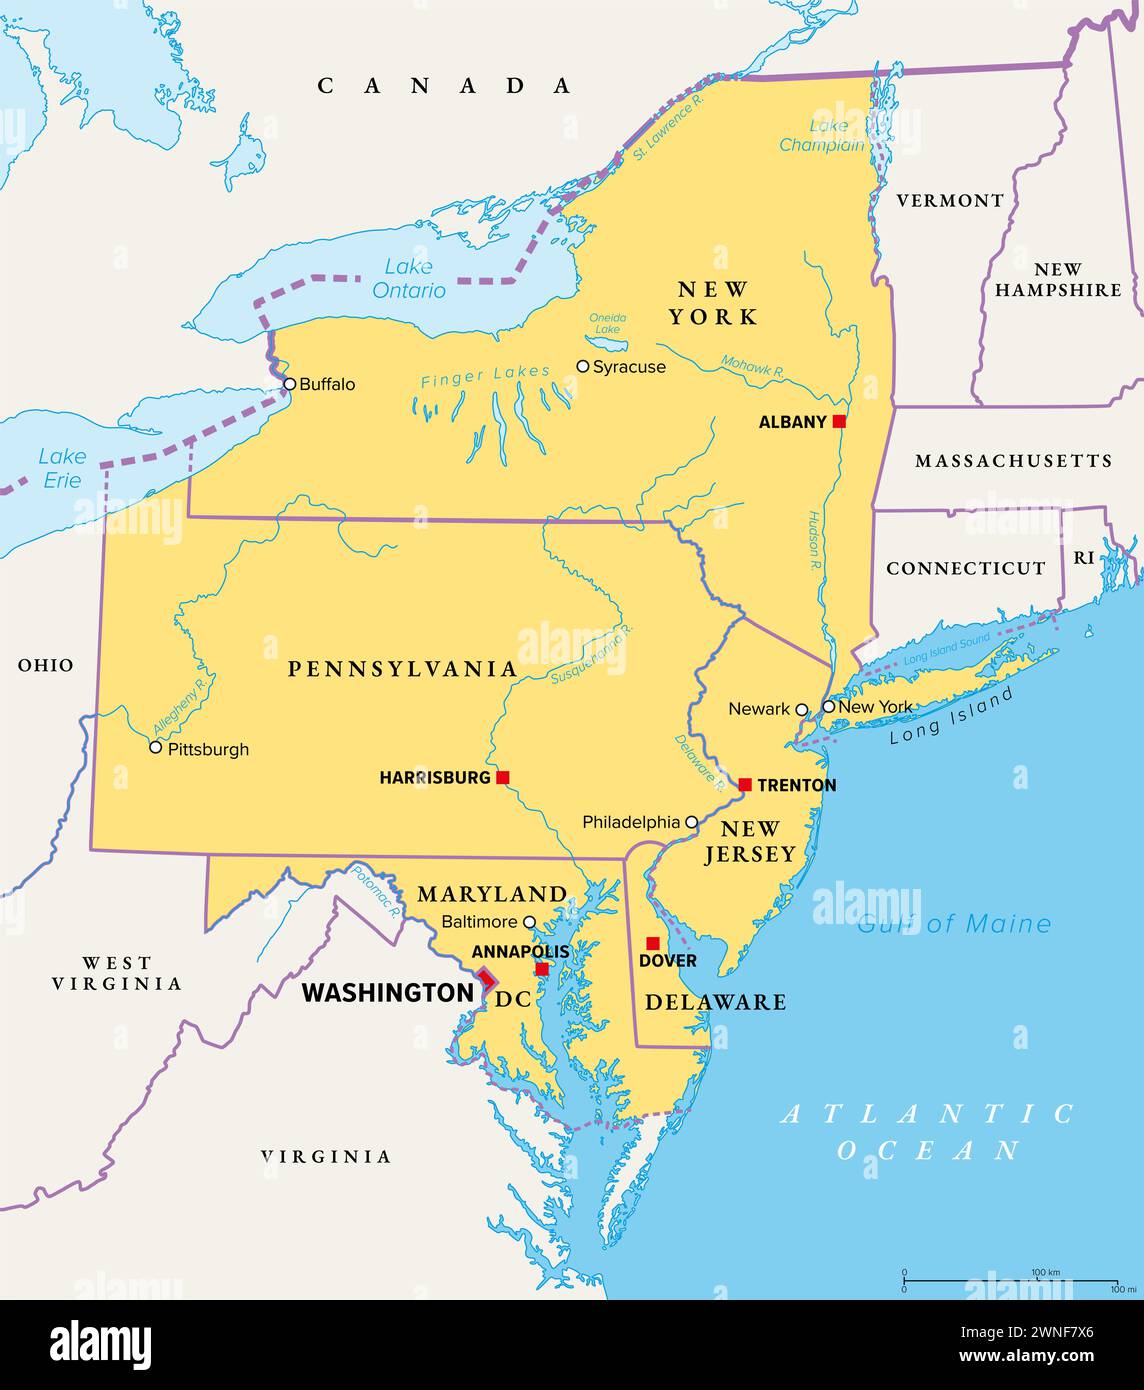 Regione medioatlantica degli Stati Uniti, mappa politica. Situato nella sovrapposizione tra gli stati nord-orientali e sud-orientali. Foto Stock